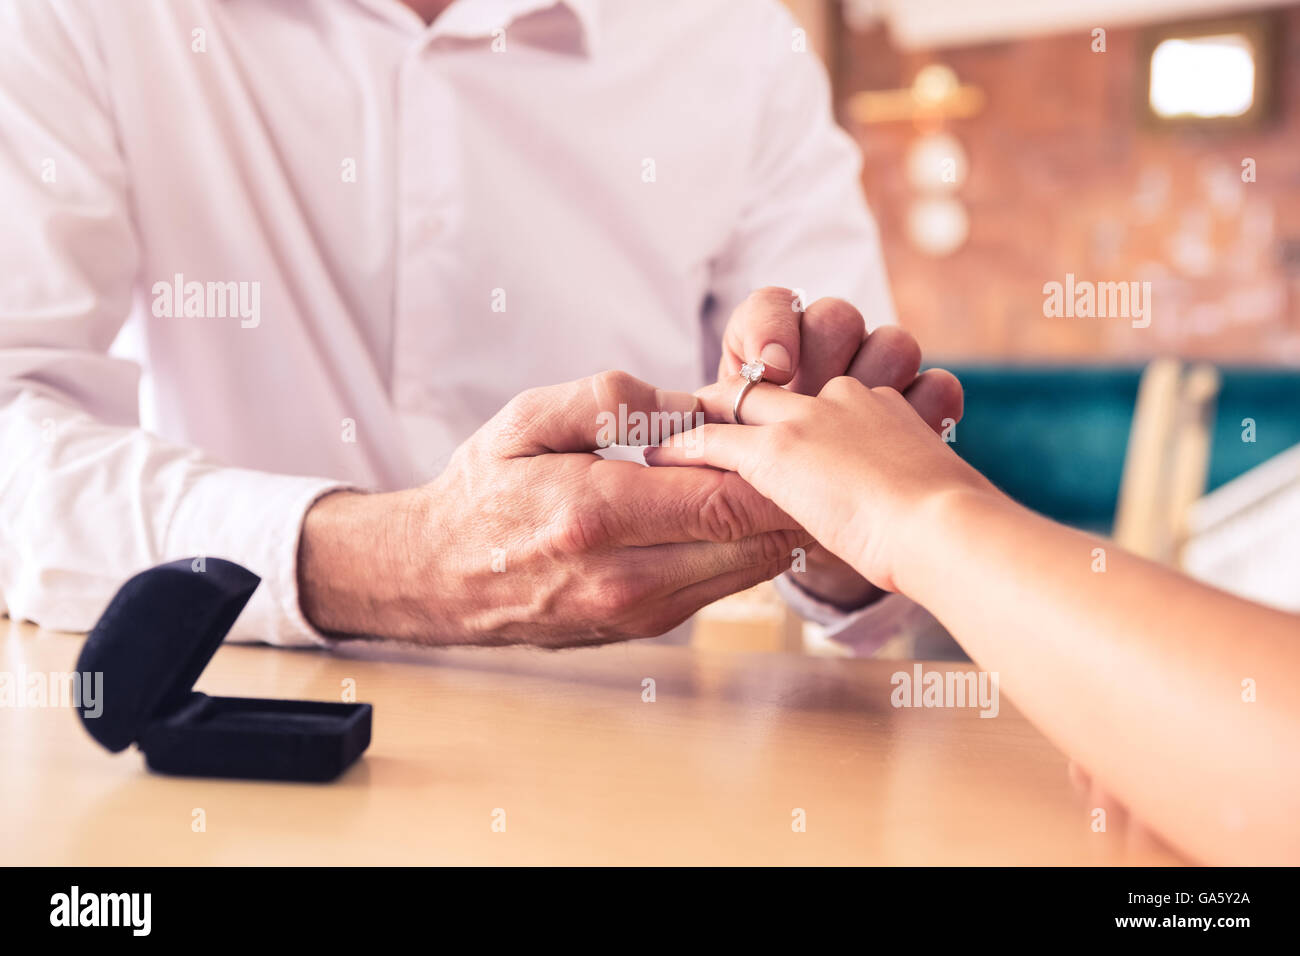 Женщина пальцем мужчину видео. Мужчина надевает ожерелье. Фото руки с обручальным кольцом у мужчины на столе. Фото где парень надевает кольцо на палец.